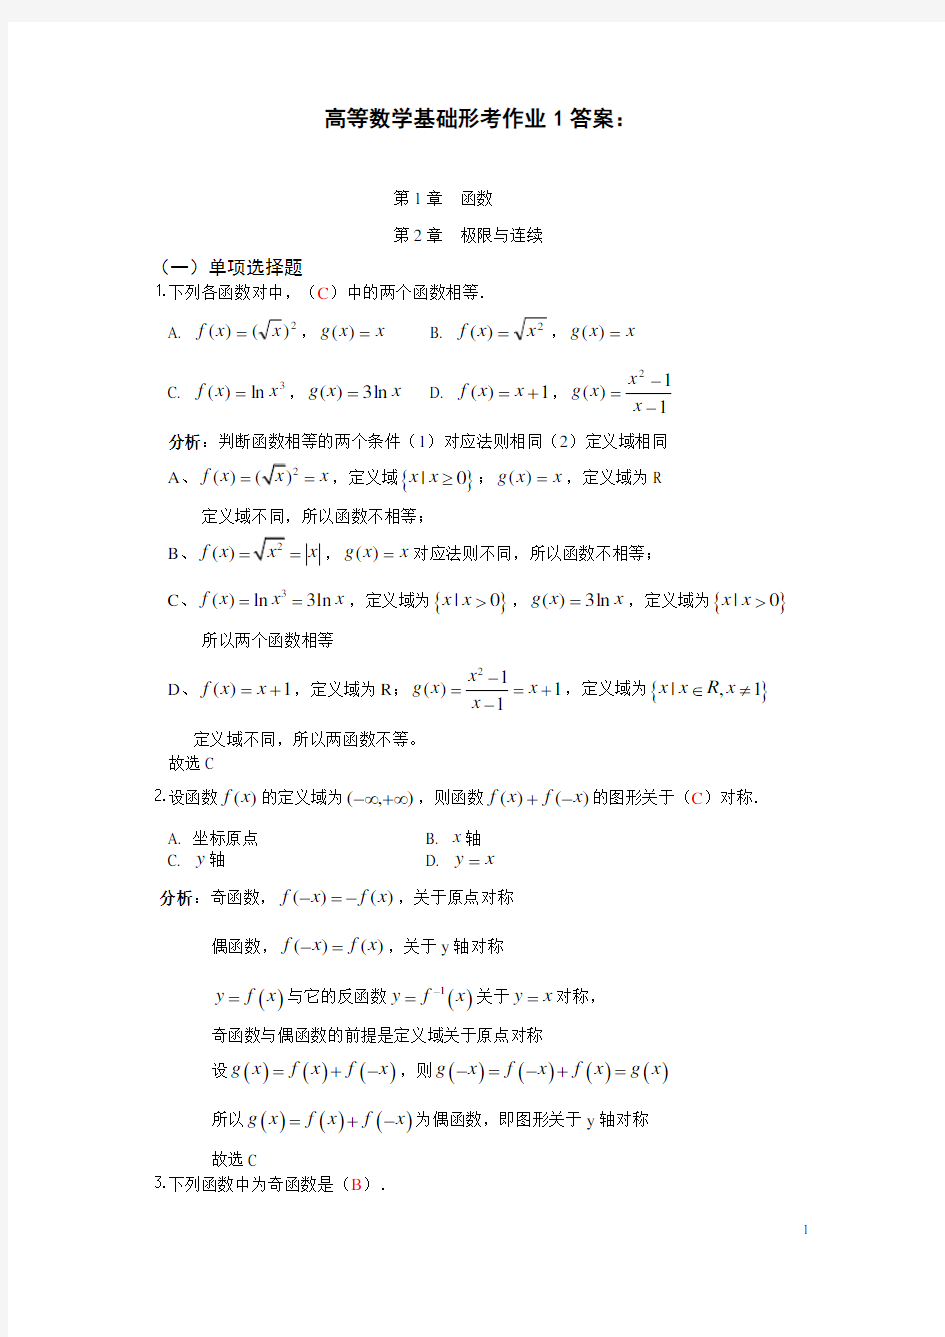 形考作业1答案(高等数学基础电大形考作业一)